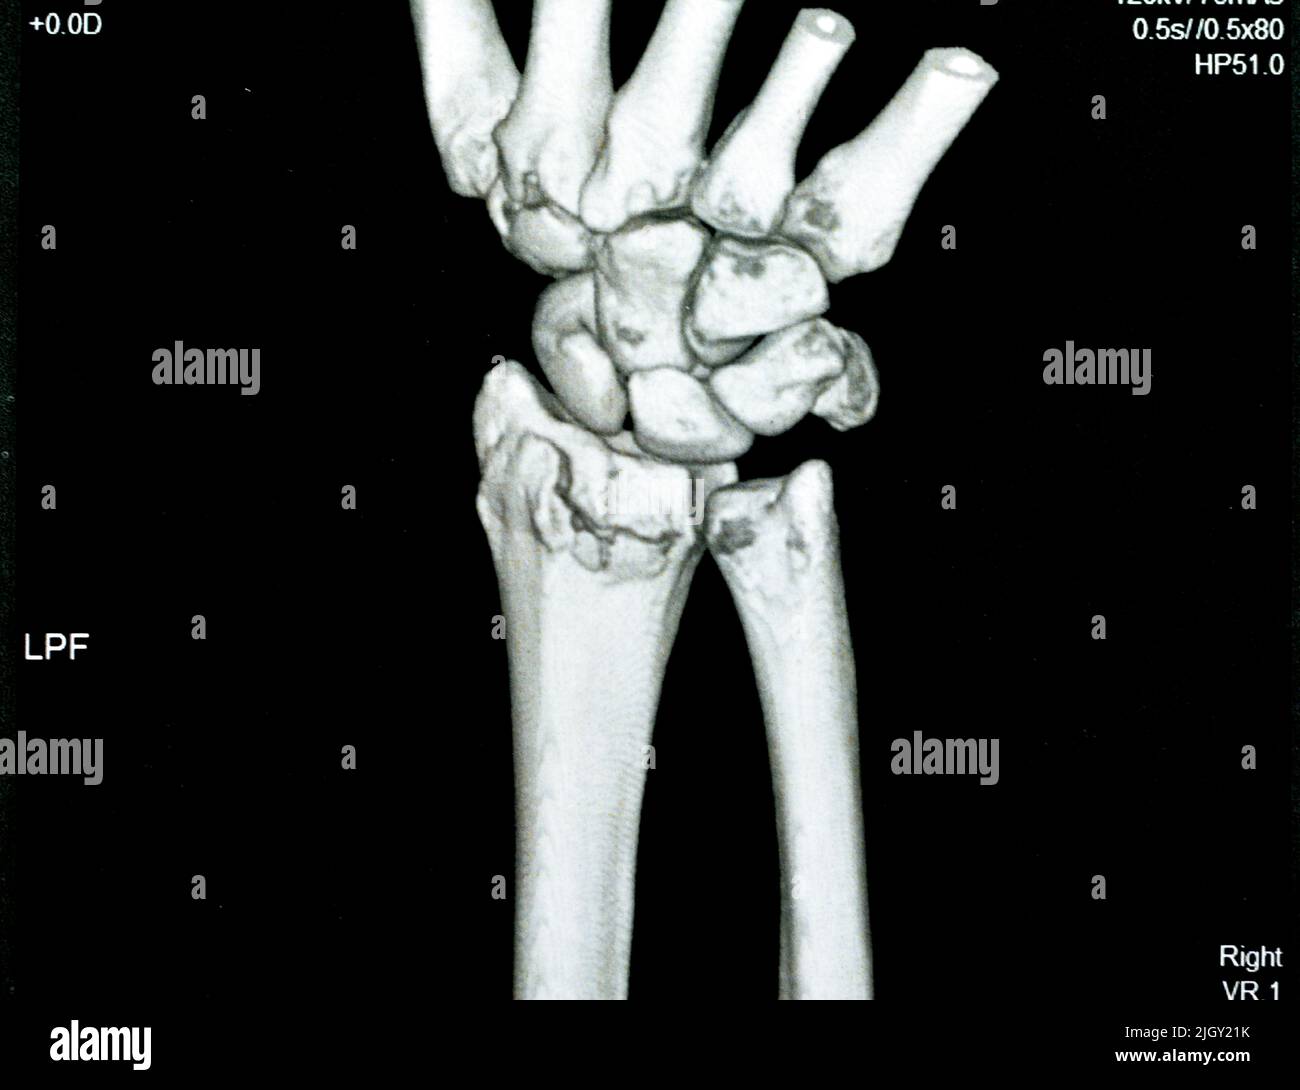 La vue 3D de l'articulation du poignet droit de l'acquisition CT montre une fracture du rayon distal droit pour une réduction fermée et un foyer sélectif moulé d'une imagerie d'acquisition CAT montrant la fracturation Banque D'Images